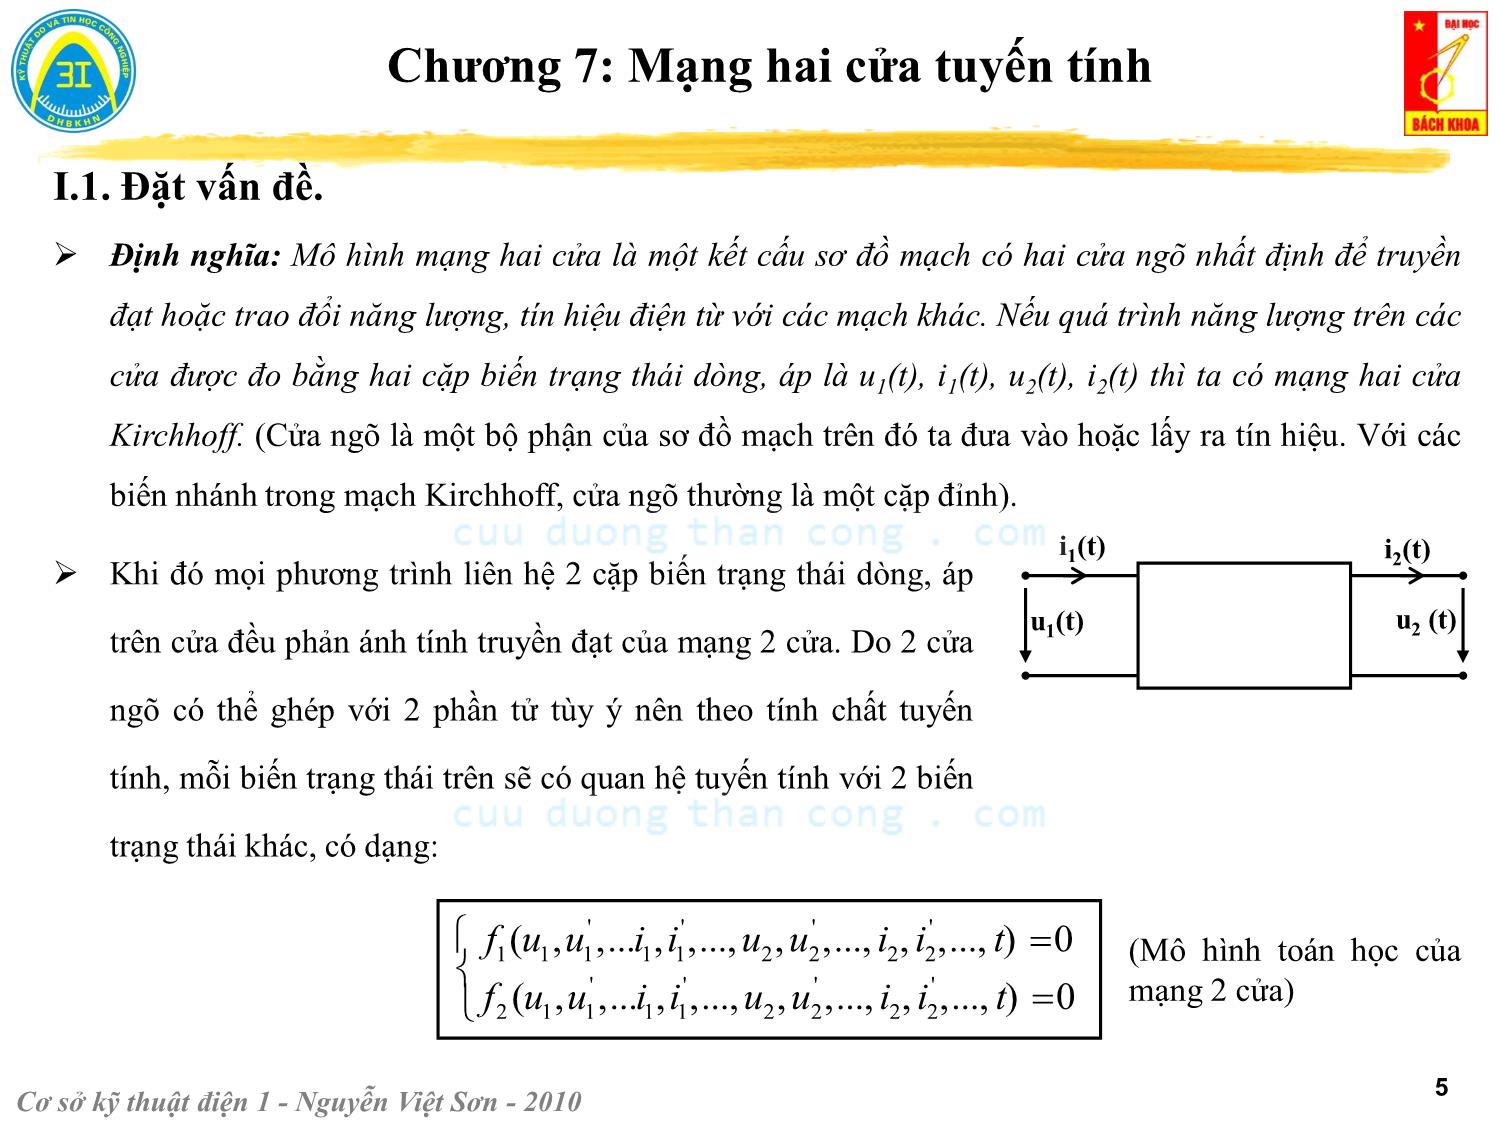 Bài giảng Kỹ thuật điện 1 - Chương 7: Mạng hai cửa tuyến tính - Nguyễn Việt Sơn trang 5